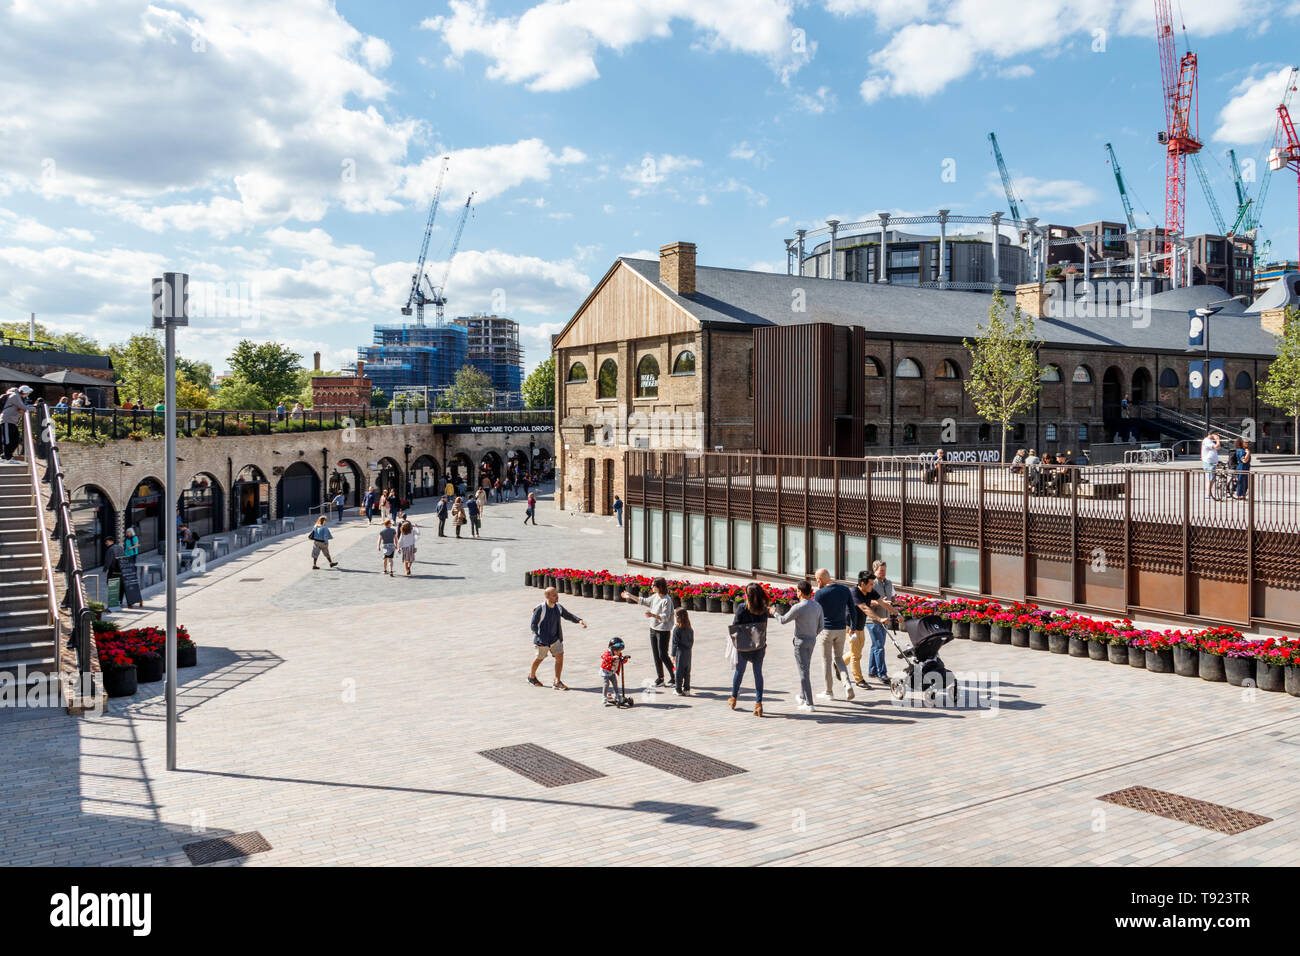 Das kürzlich eröffnete den öffentlichen Raum in die Kohle Tropfen Hof, King's Cross, London, UK, 2019 Stockfoto